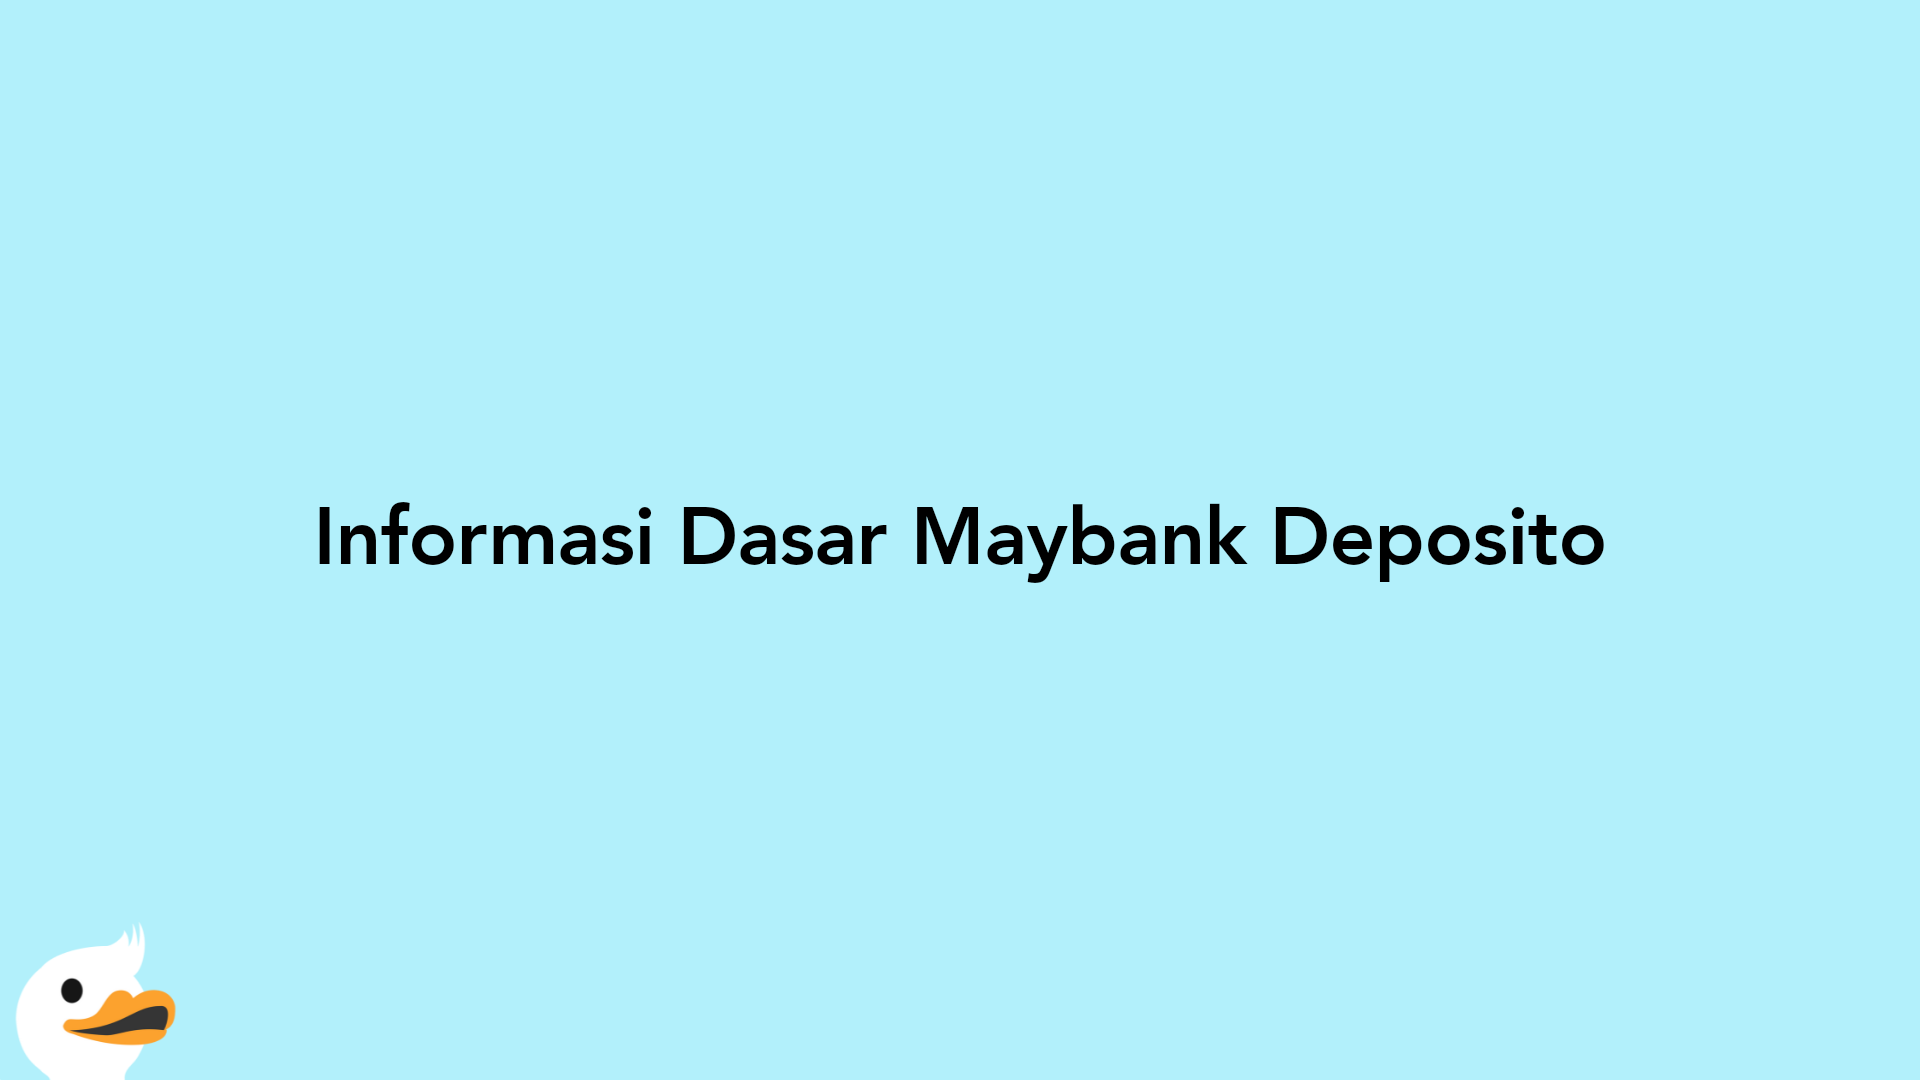 Informasi Dasar Maybank Deposito